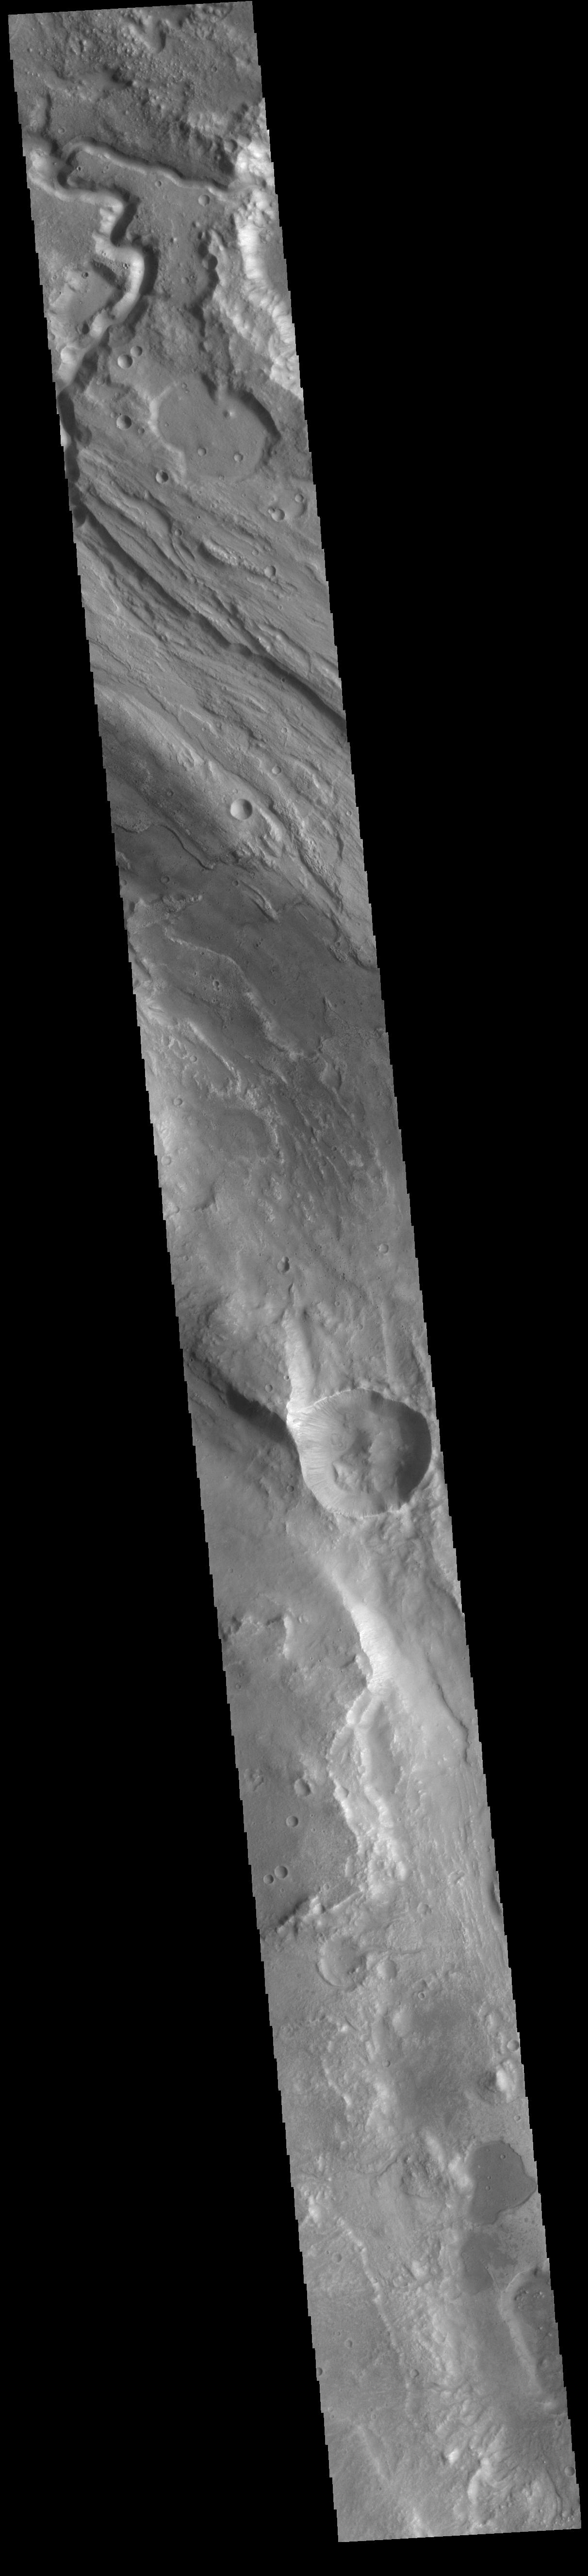 PIA22610: Ares Vallis